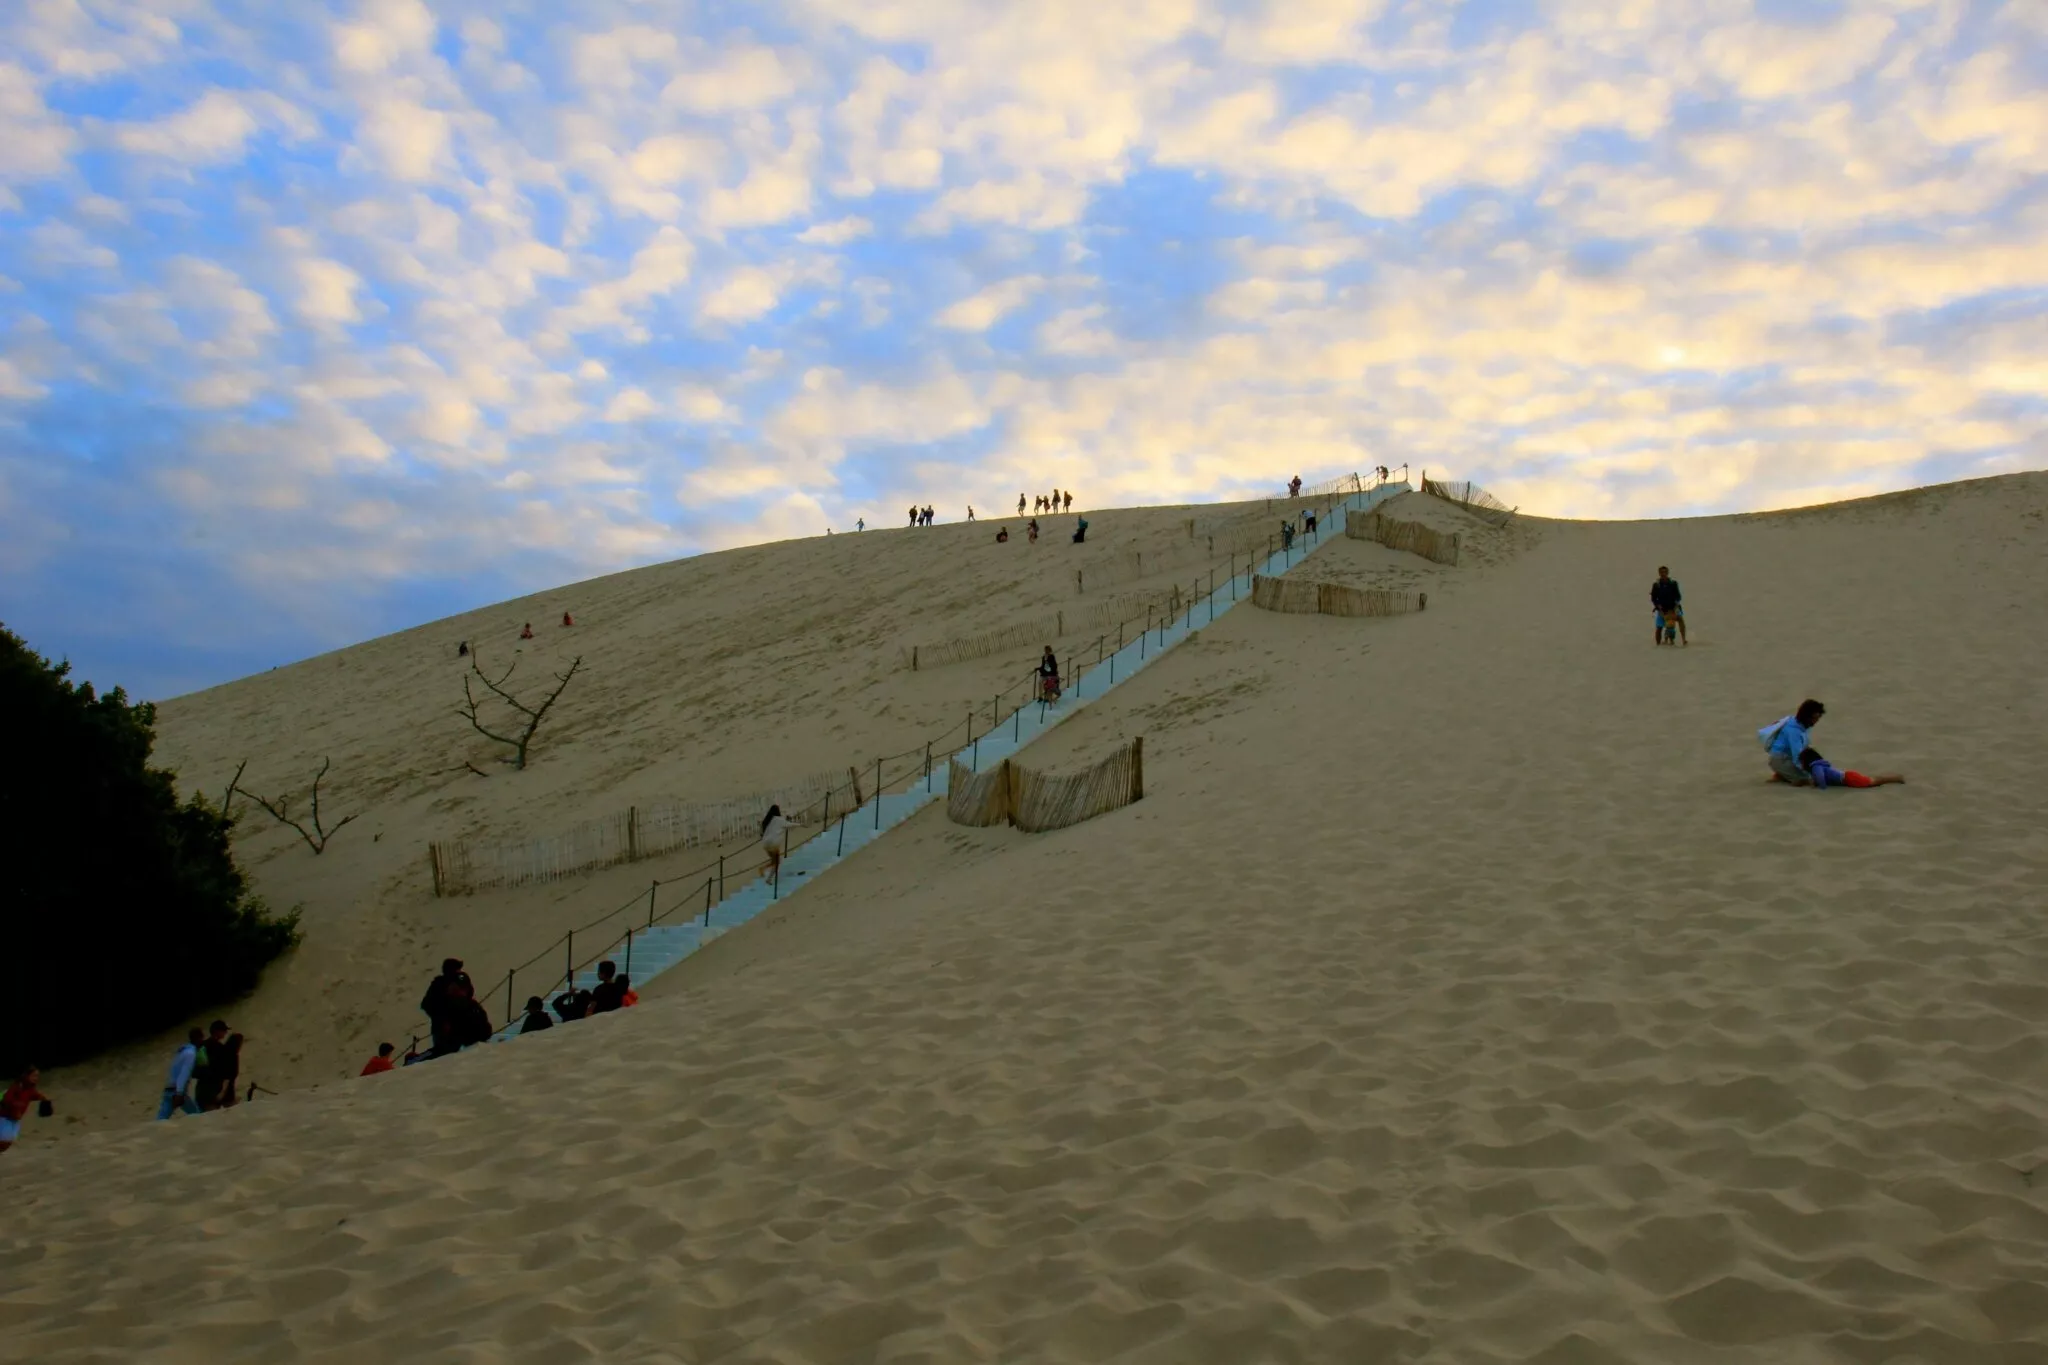 Duna Grande in Peru, South America | Deserts,Sandboarding - Rated 0.8